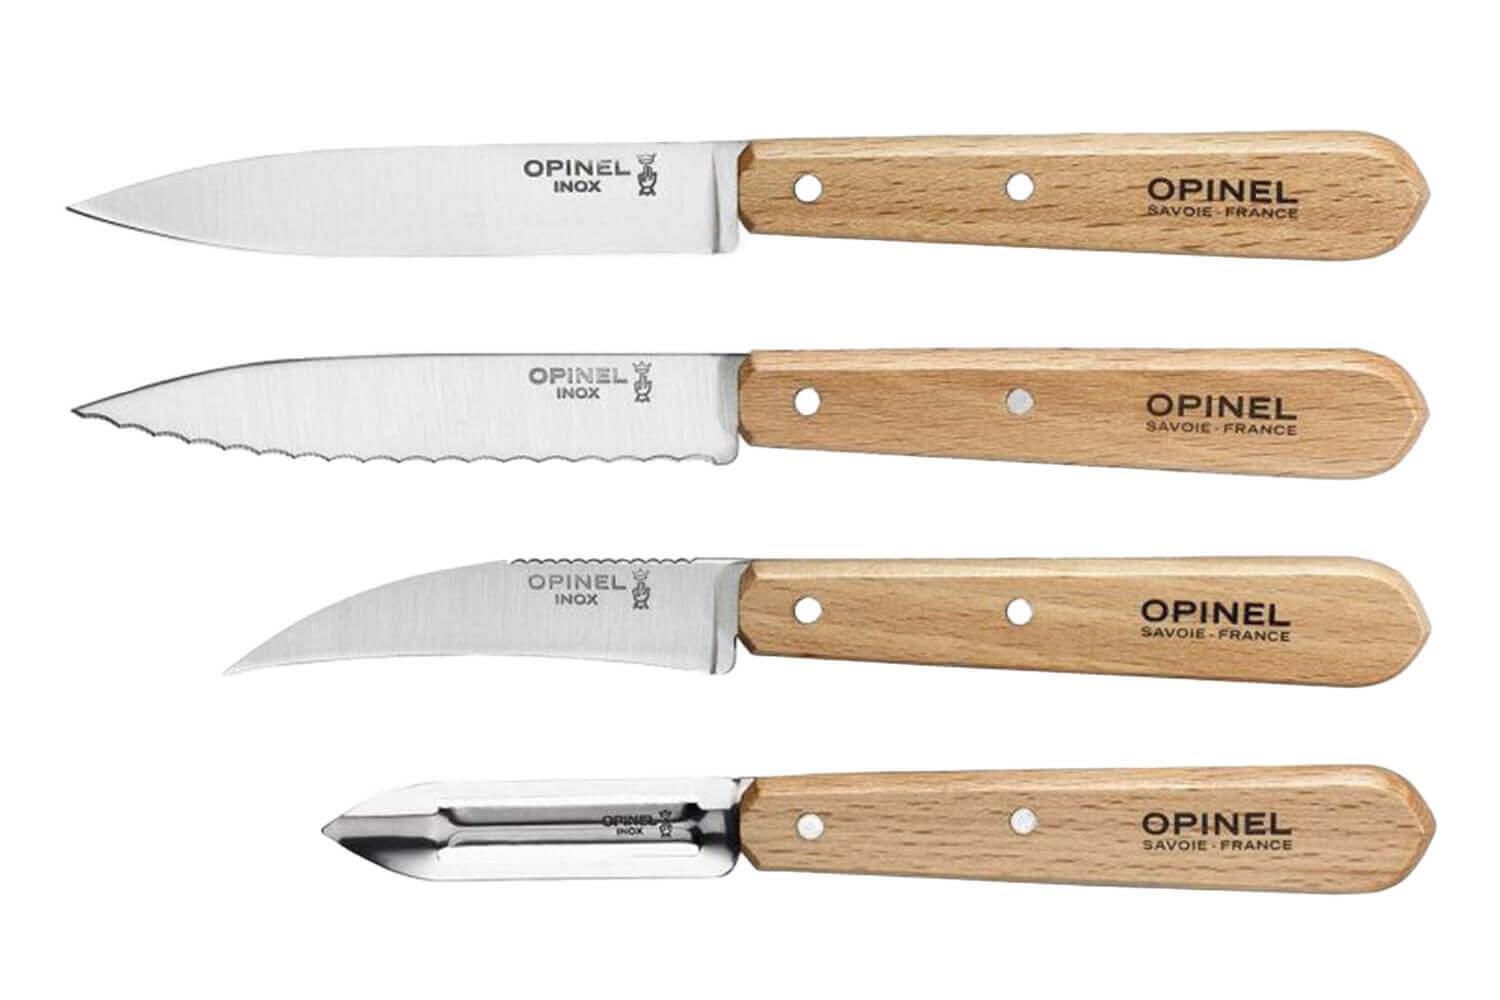 Couteau Opinel n. 07 idéal pour couper les châtaignes et les fruits